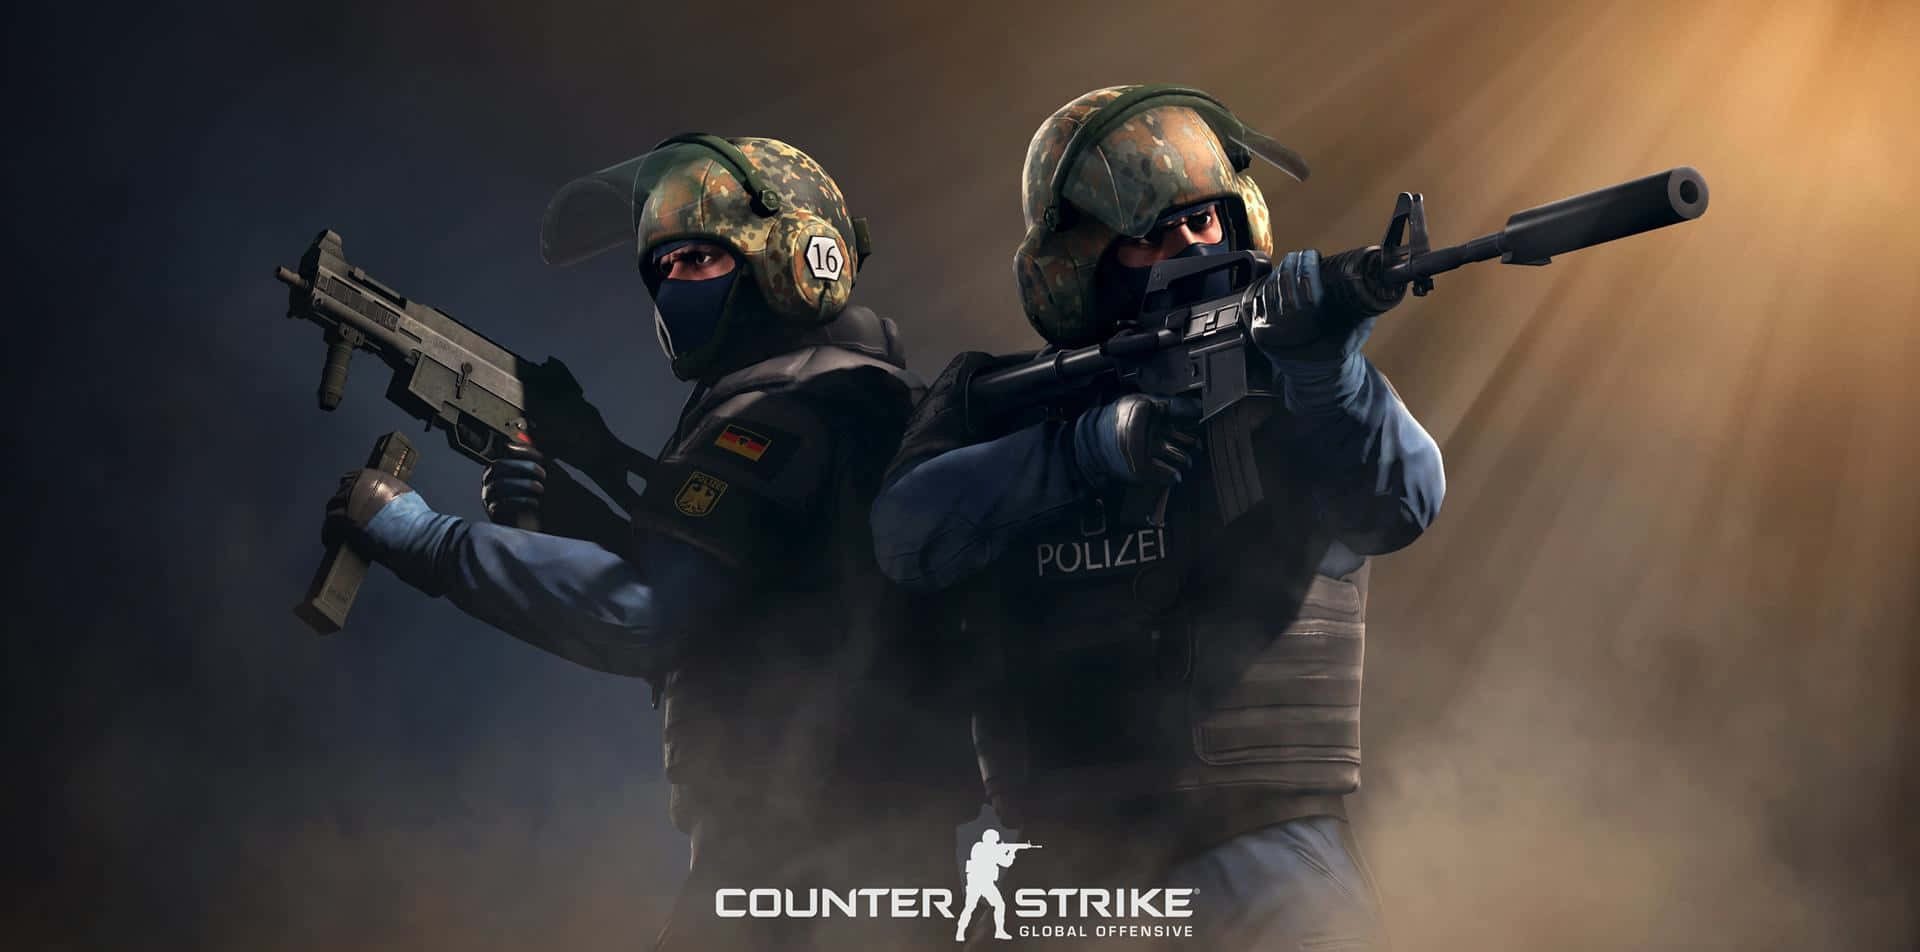 Counter-Strike 2 finalmente chega ao Steam, e é de graça!